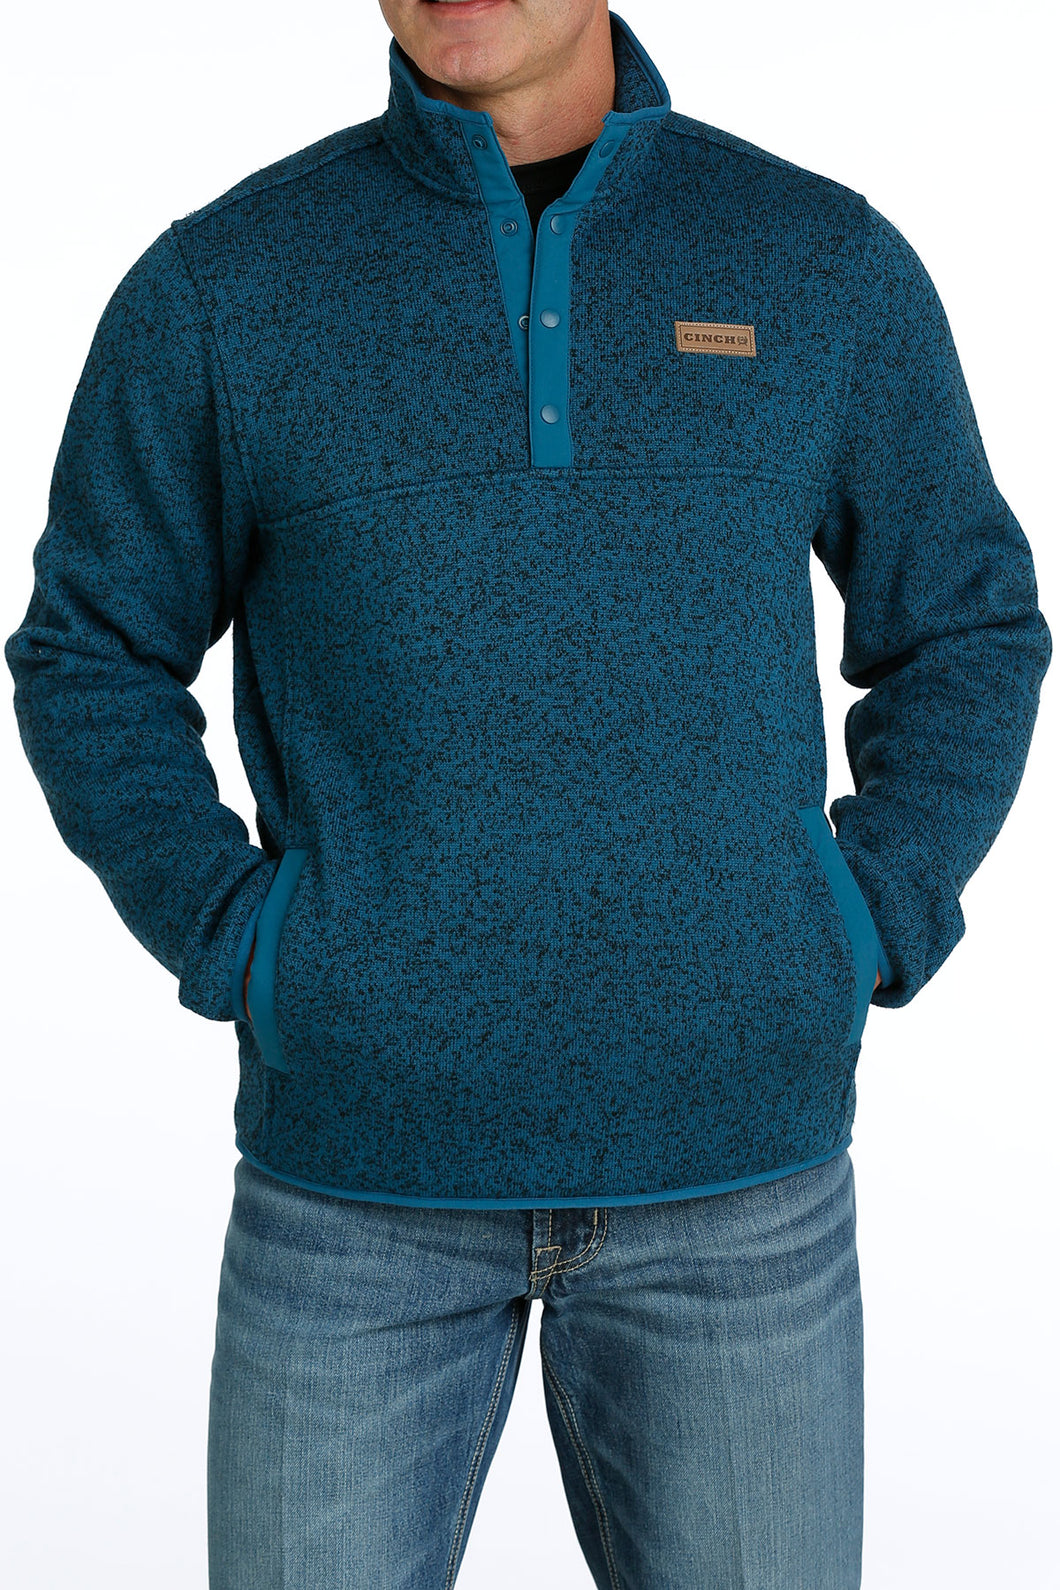 Cinch Pullover Sweater - MWK1534005